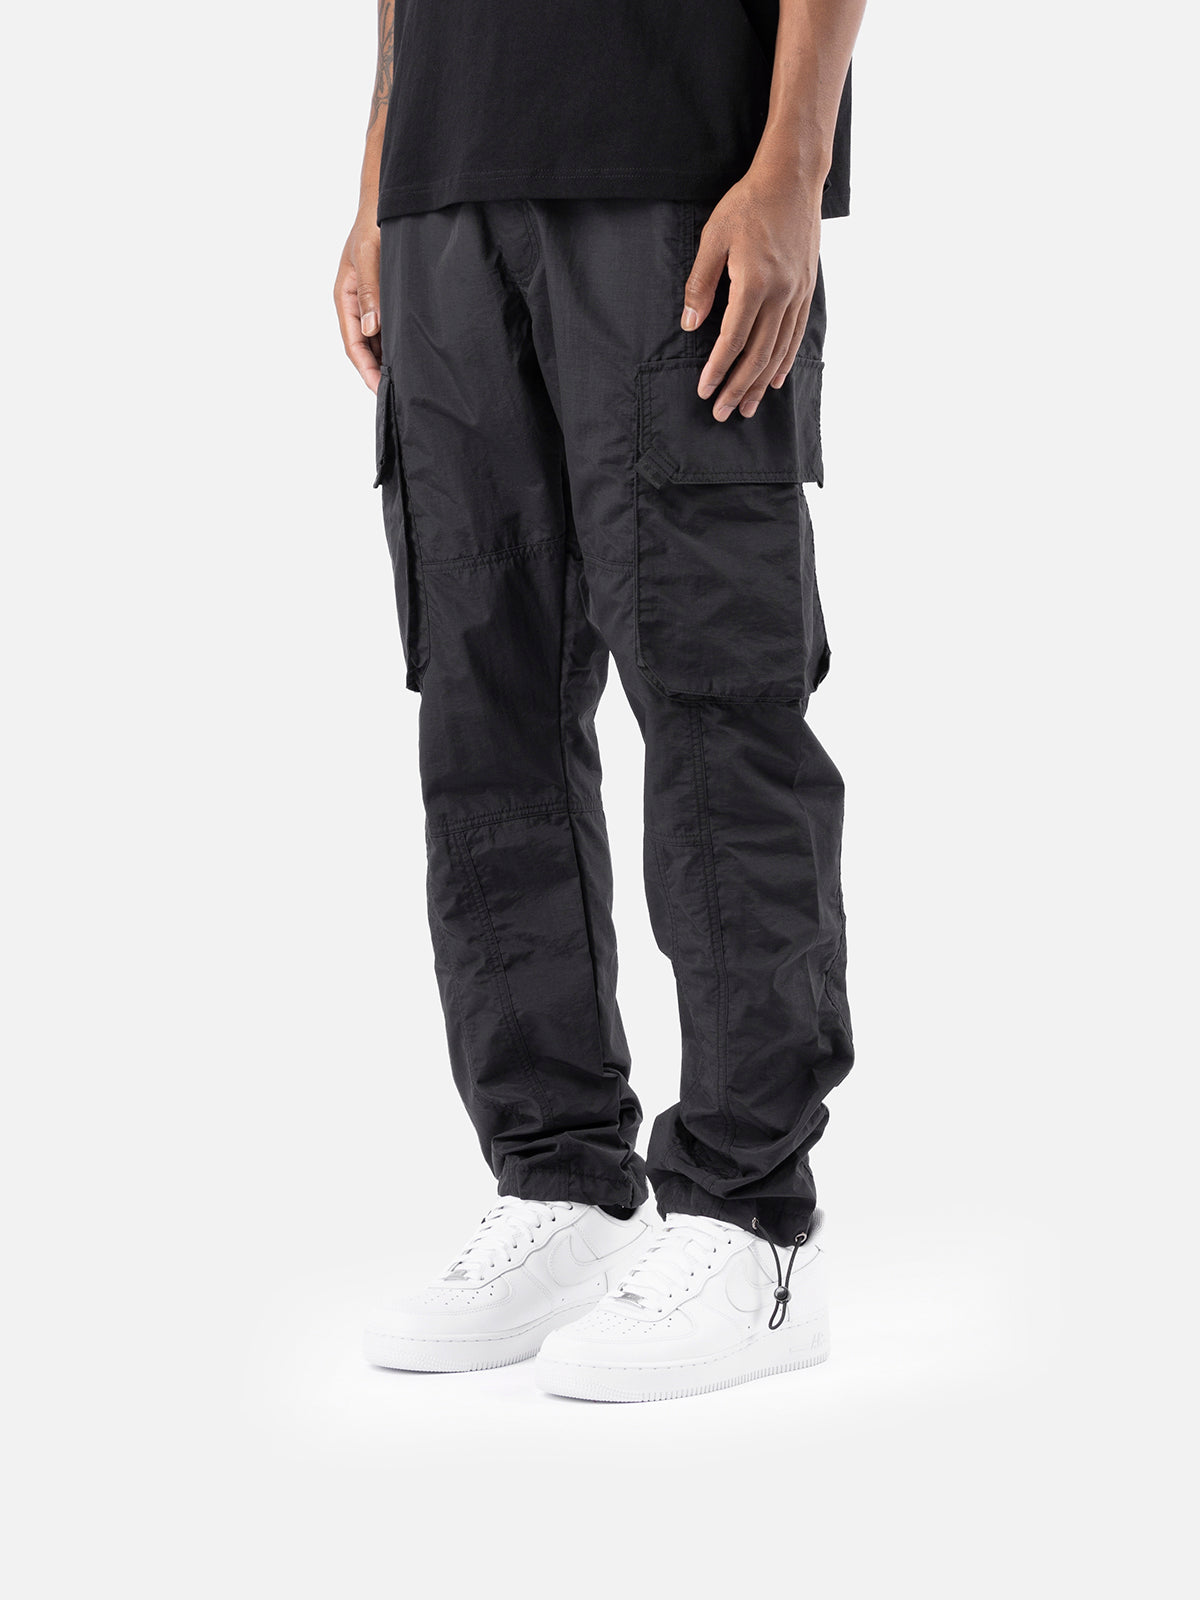 X11 Cargo Pants - Black | Blacktailor – BLACKTAILOR